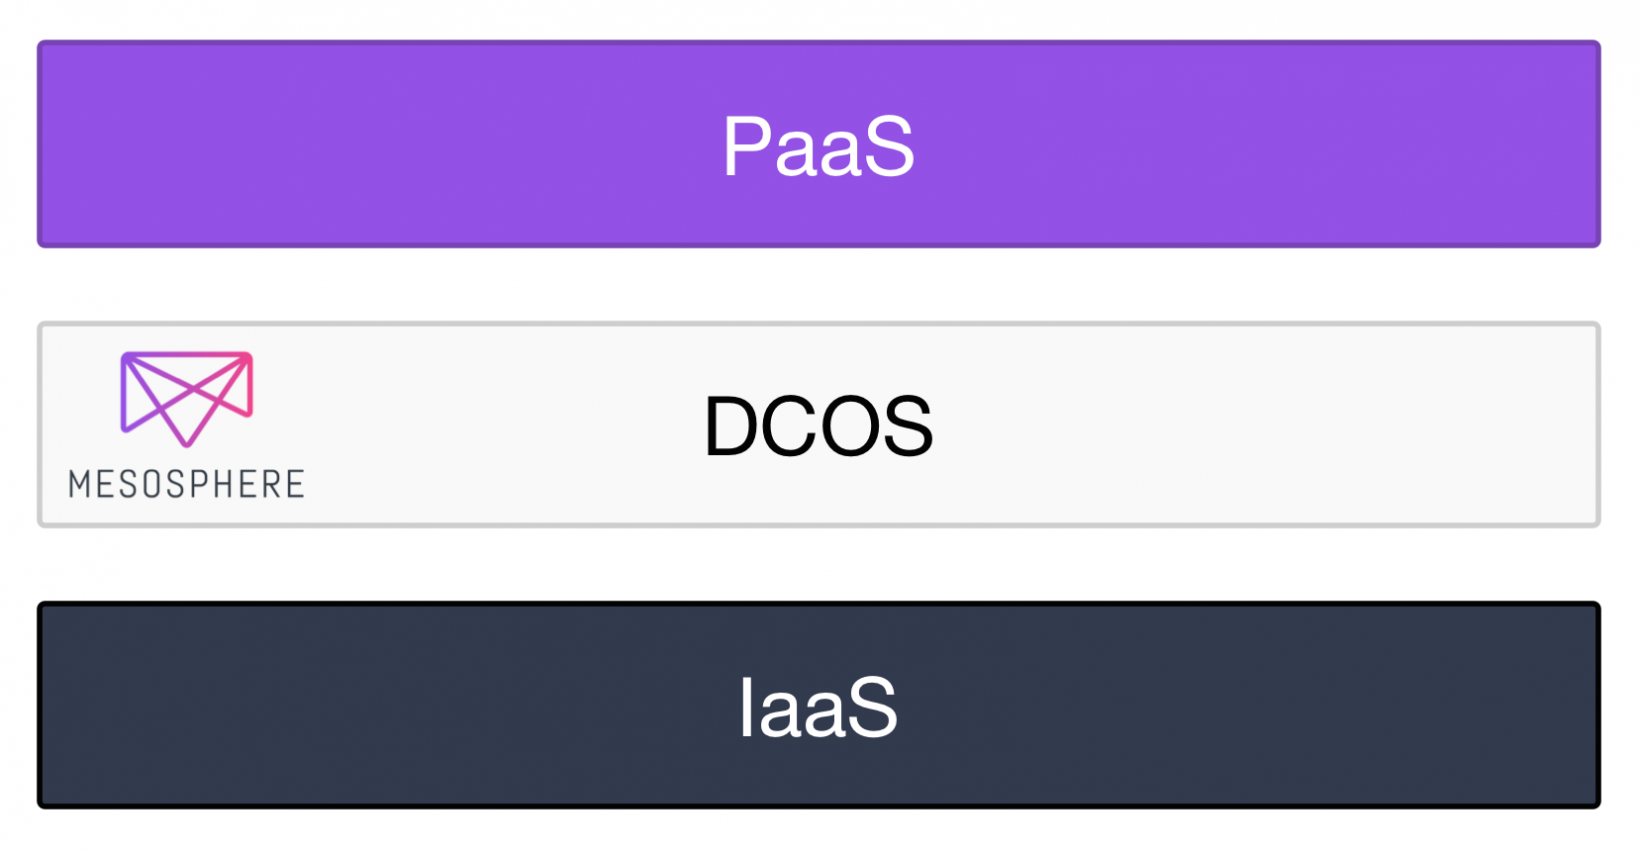 iaas 为什么私有云的定位应该是PaaS，而不是IaaS？